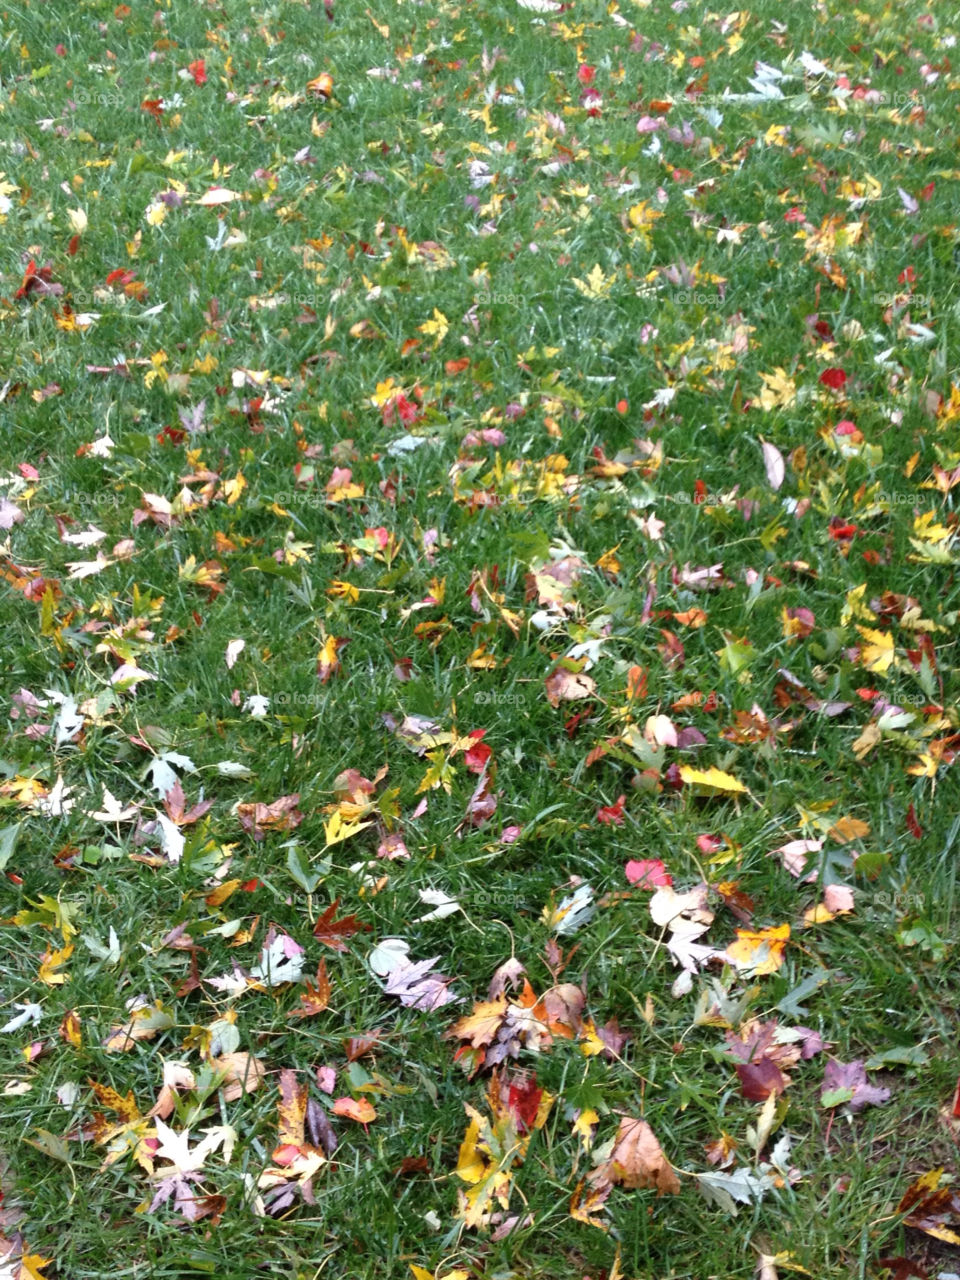 leaves fall autumn kawh823 by KAWH822